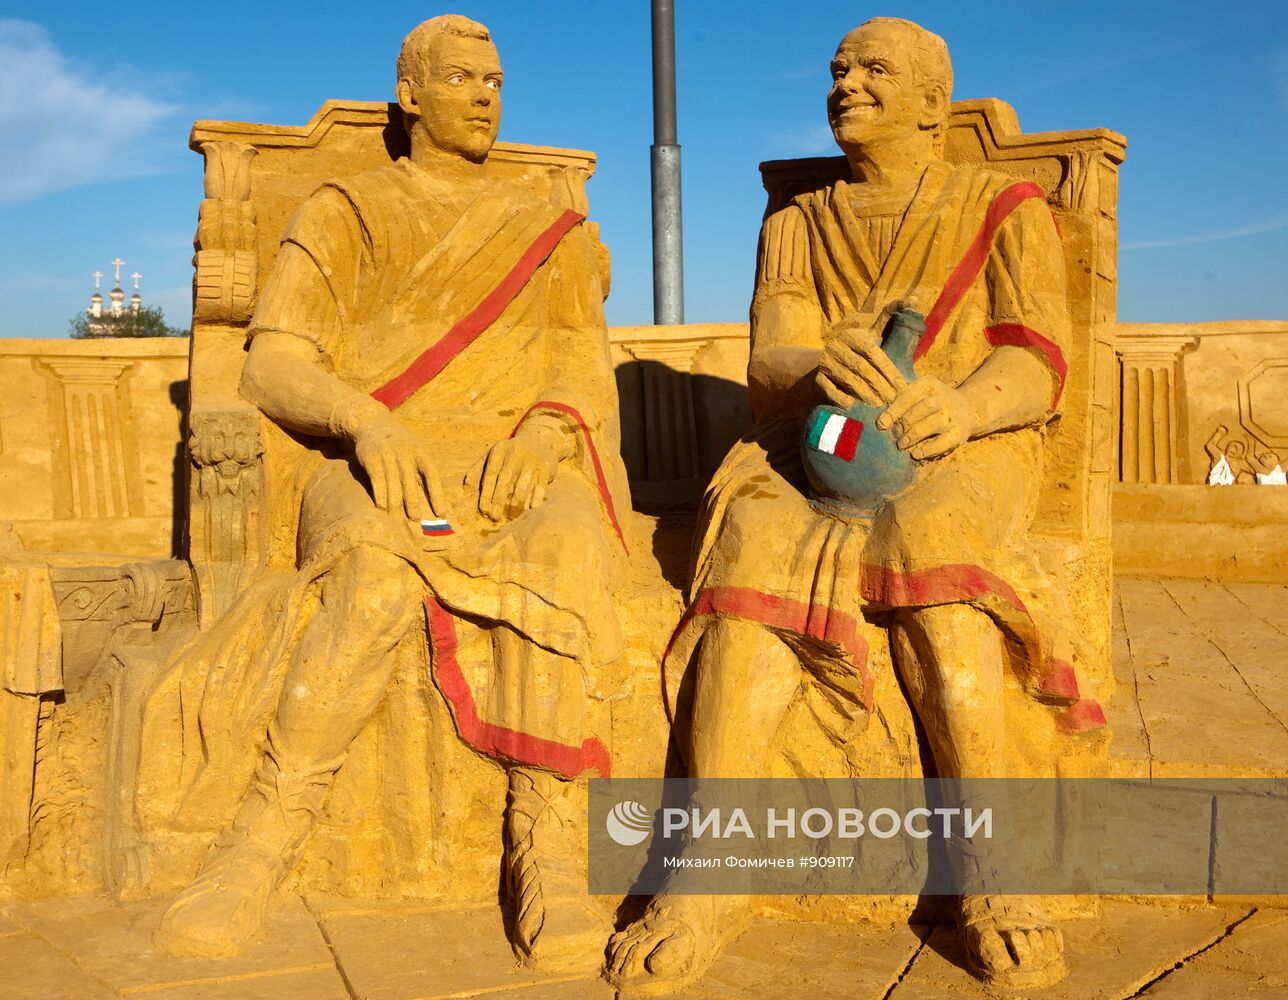 Открытие выставки песчаных скульптур "Великая Римская империя"